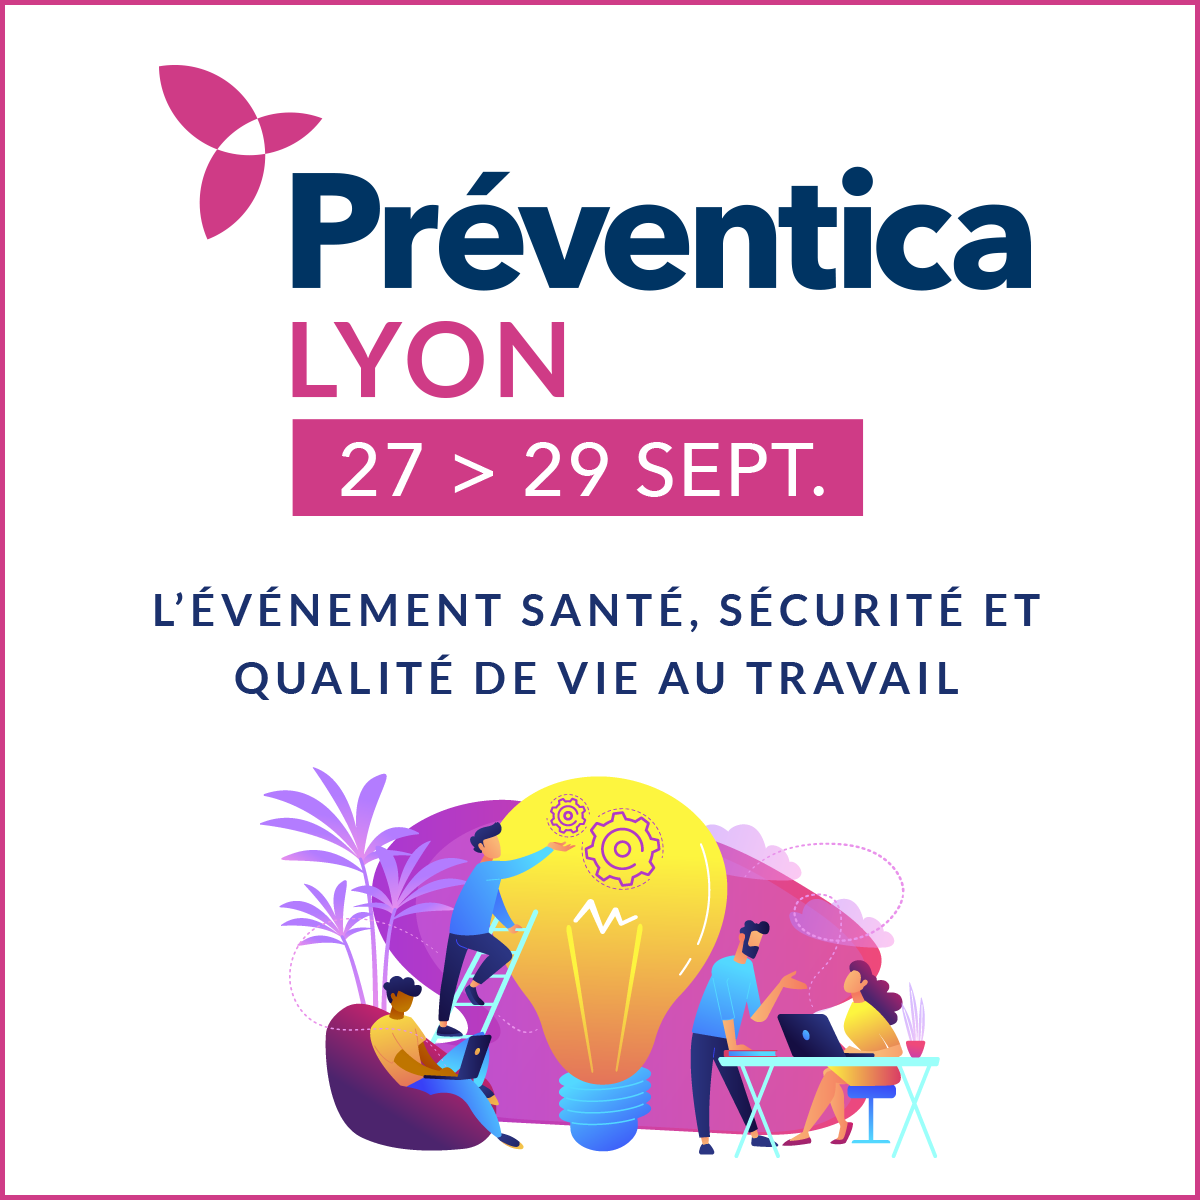 Preventica Lyon